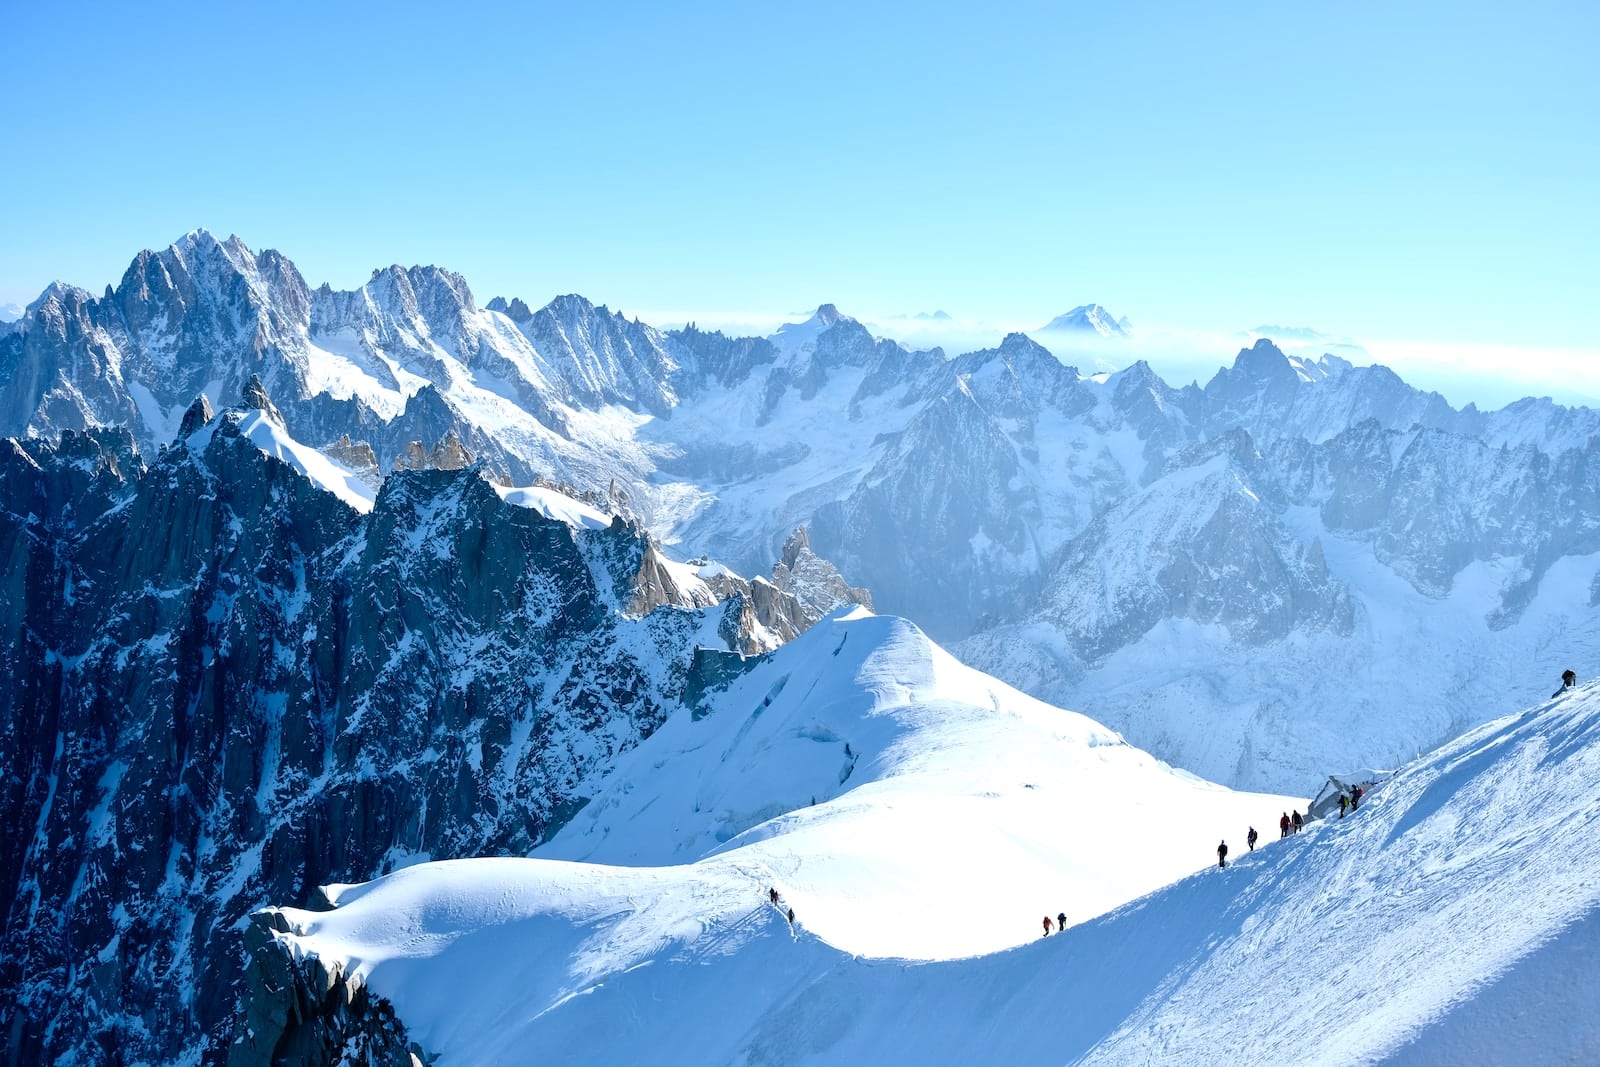 Vol en hélicoptère au-dessus du Mont Blanc : une expérience inoubliable en hiver